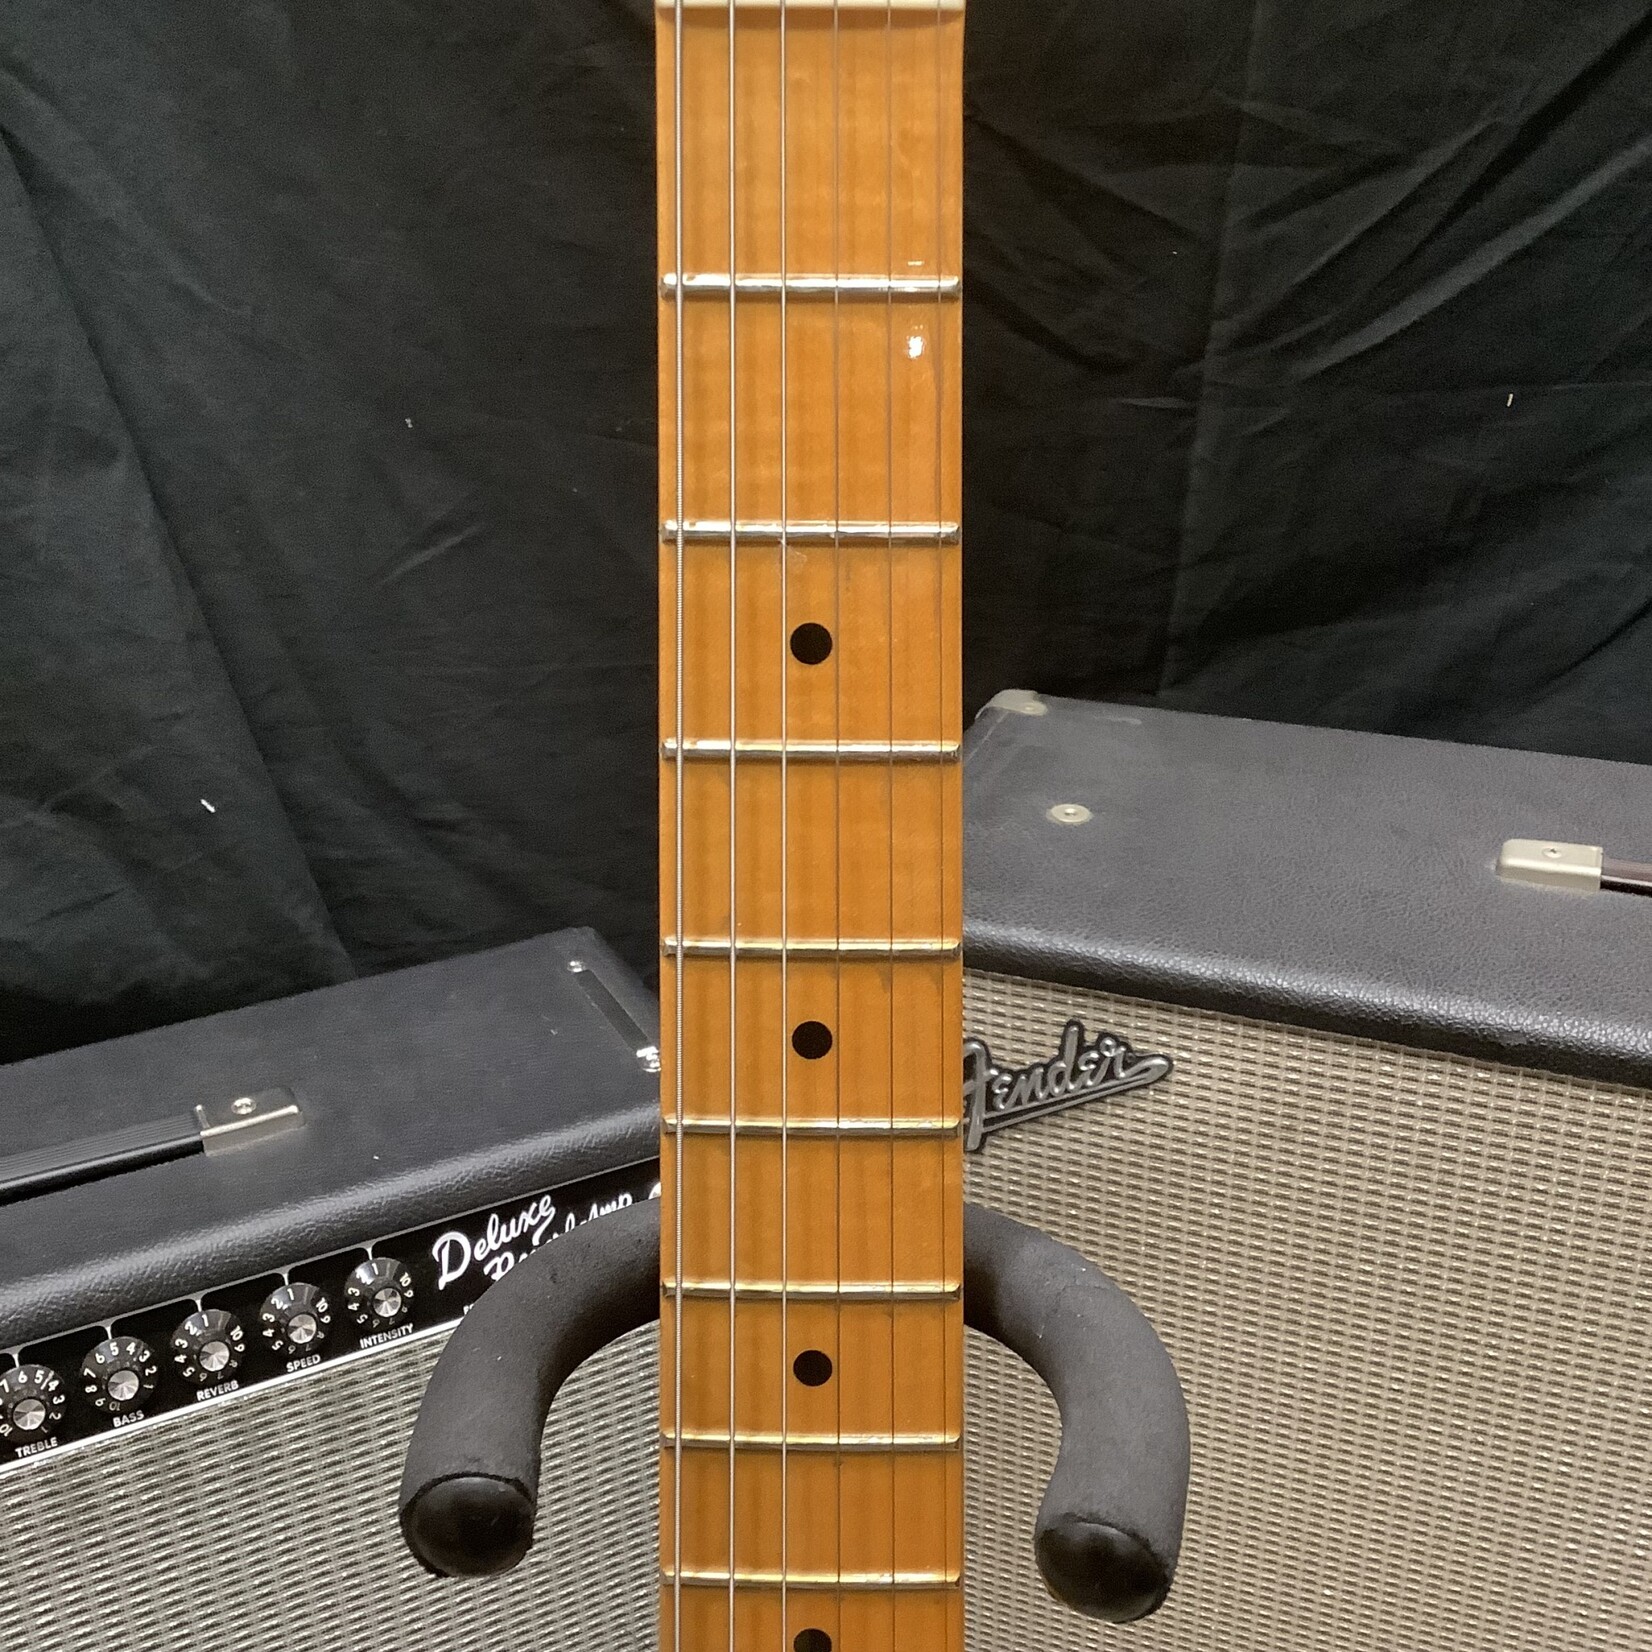 Fender 2006 Fender Eric Johnson Stratocaster Sunburst